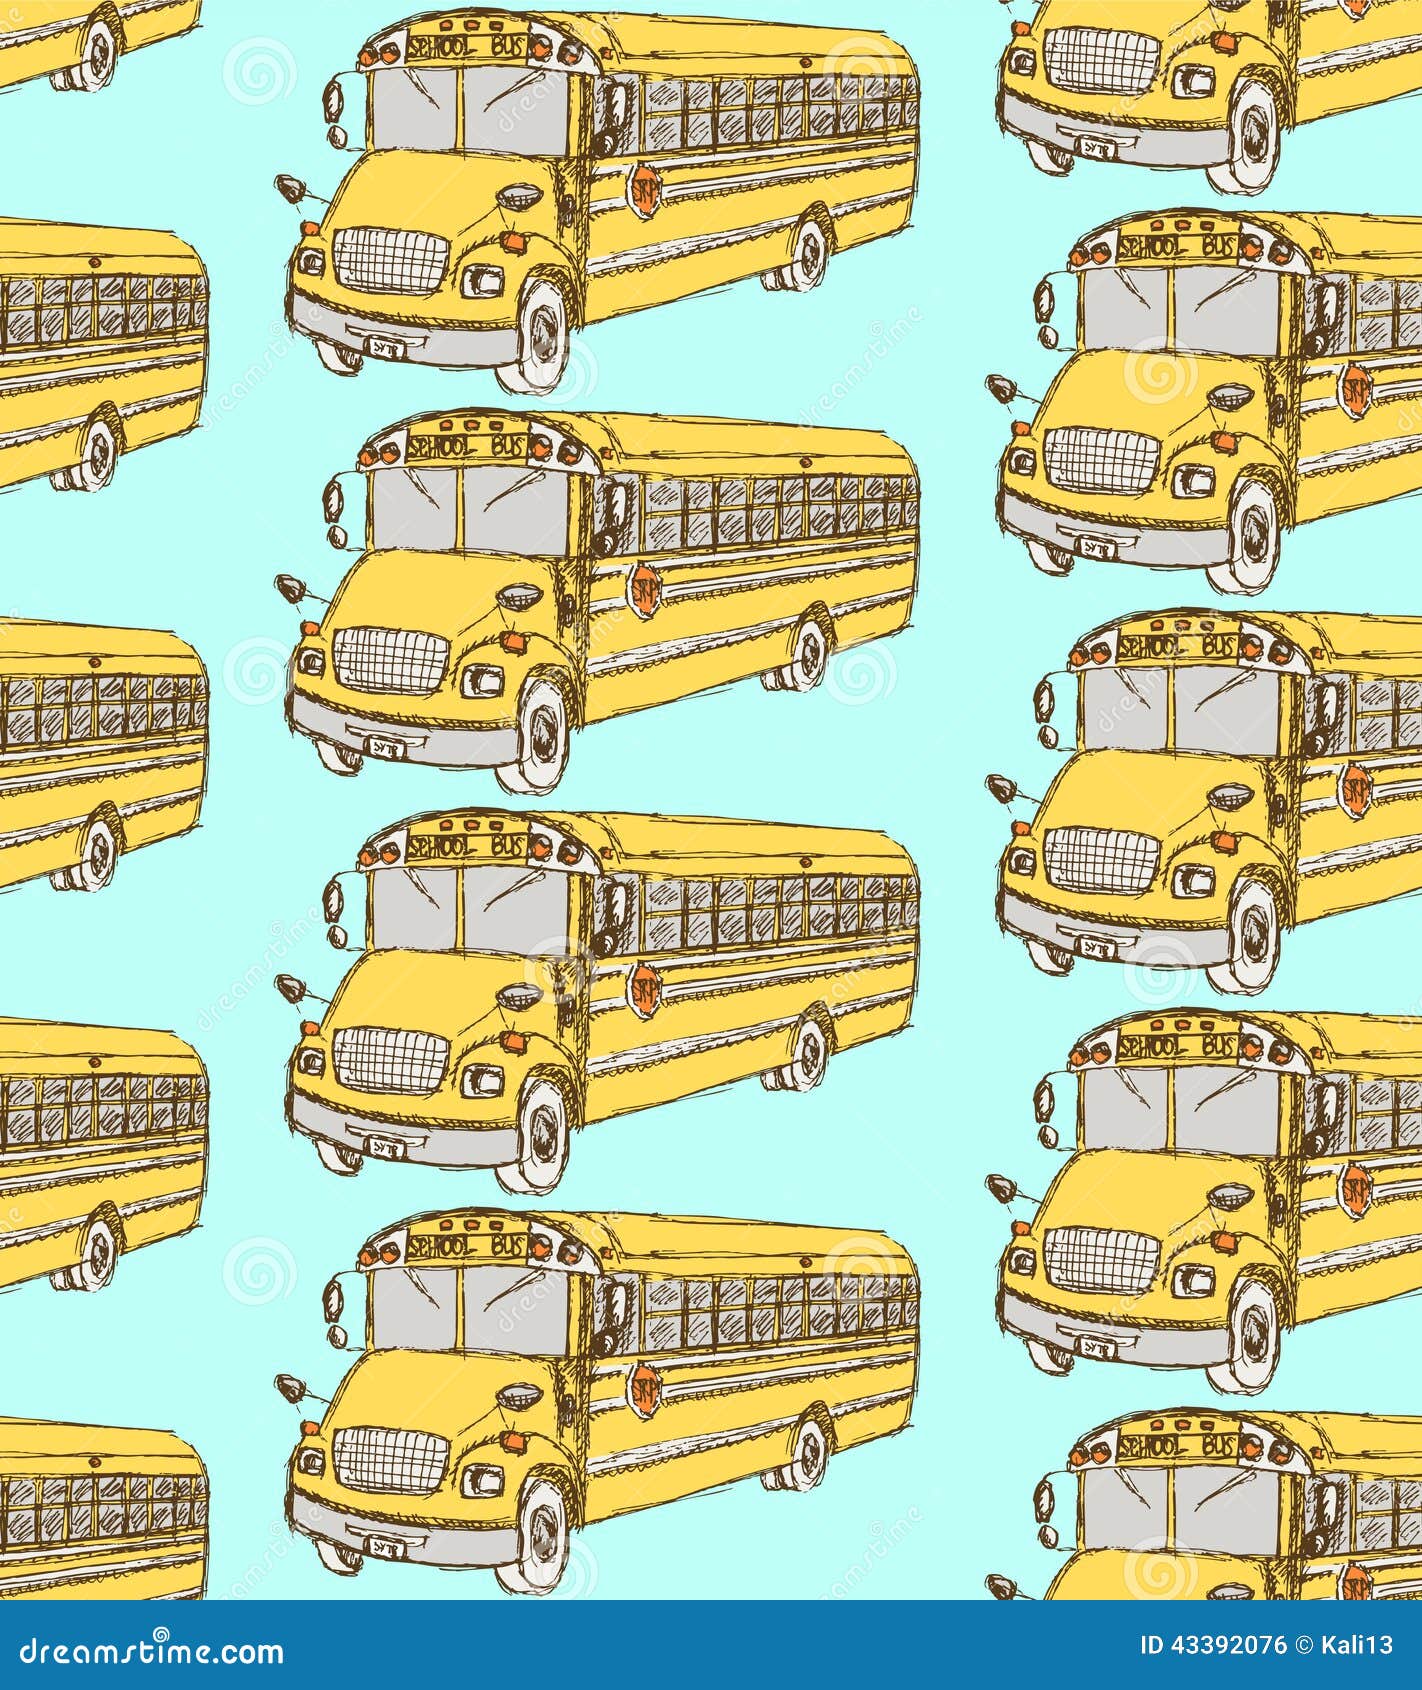 Ônibus escolar do esboço no estilo do vintage. Esboce o ônibus escolar no estilo do vintage, teste padrão sem emenda